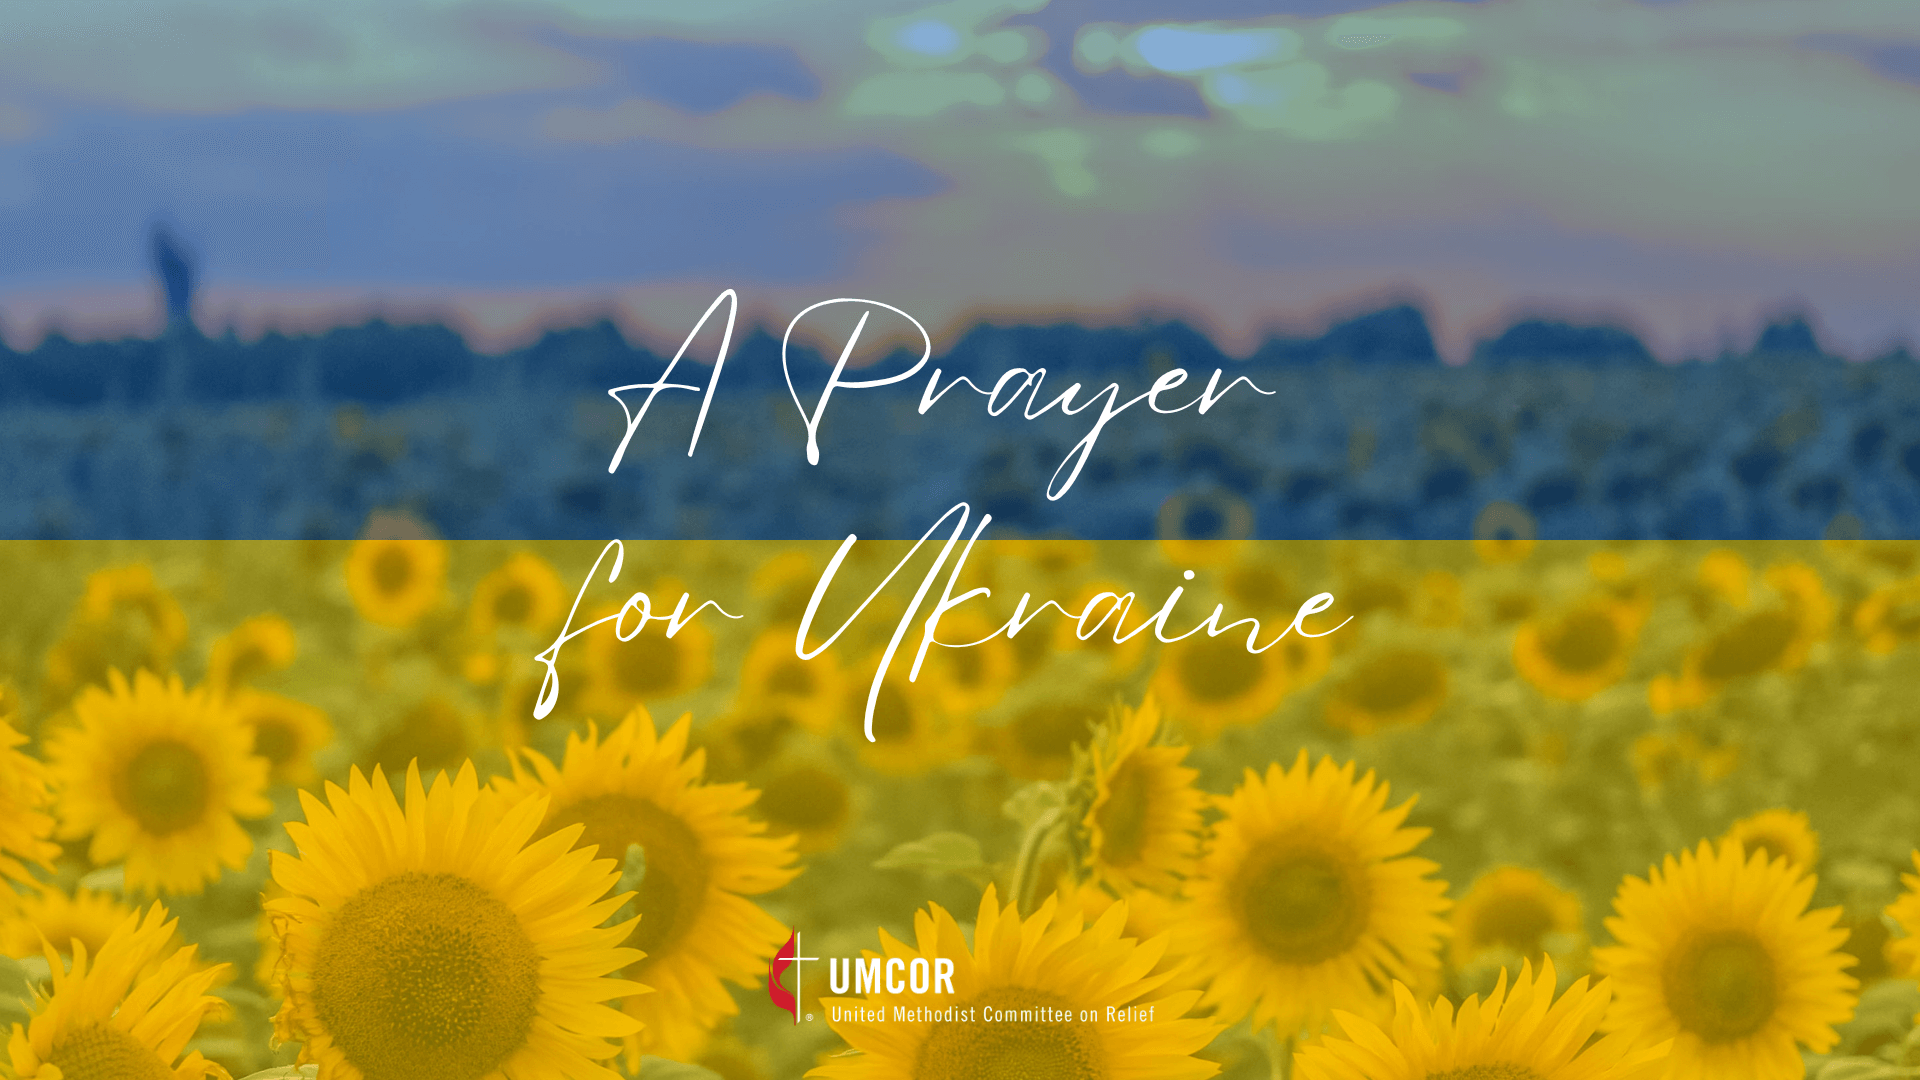 Join us in prayer for Ukraine on Friday, Feb. 24